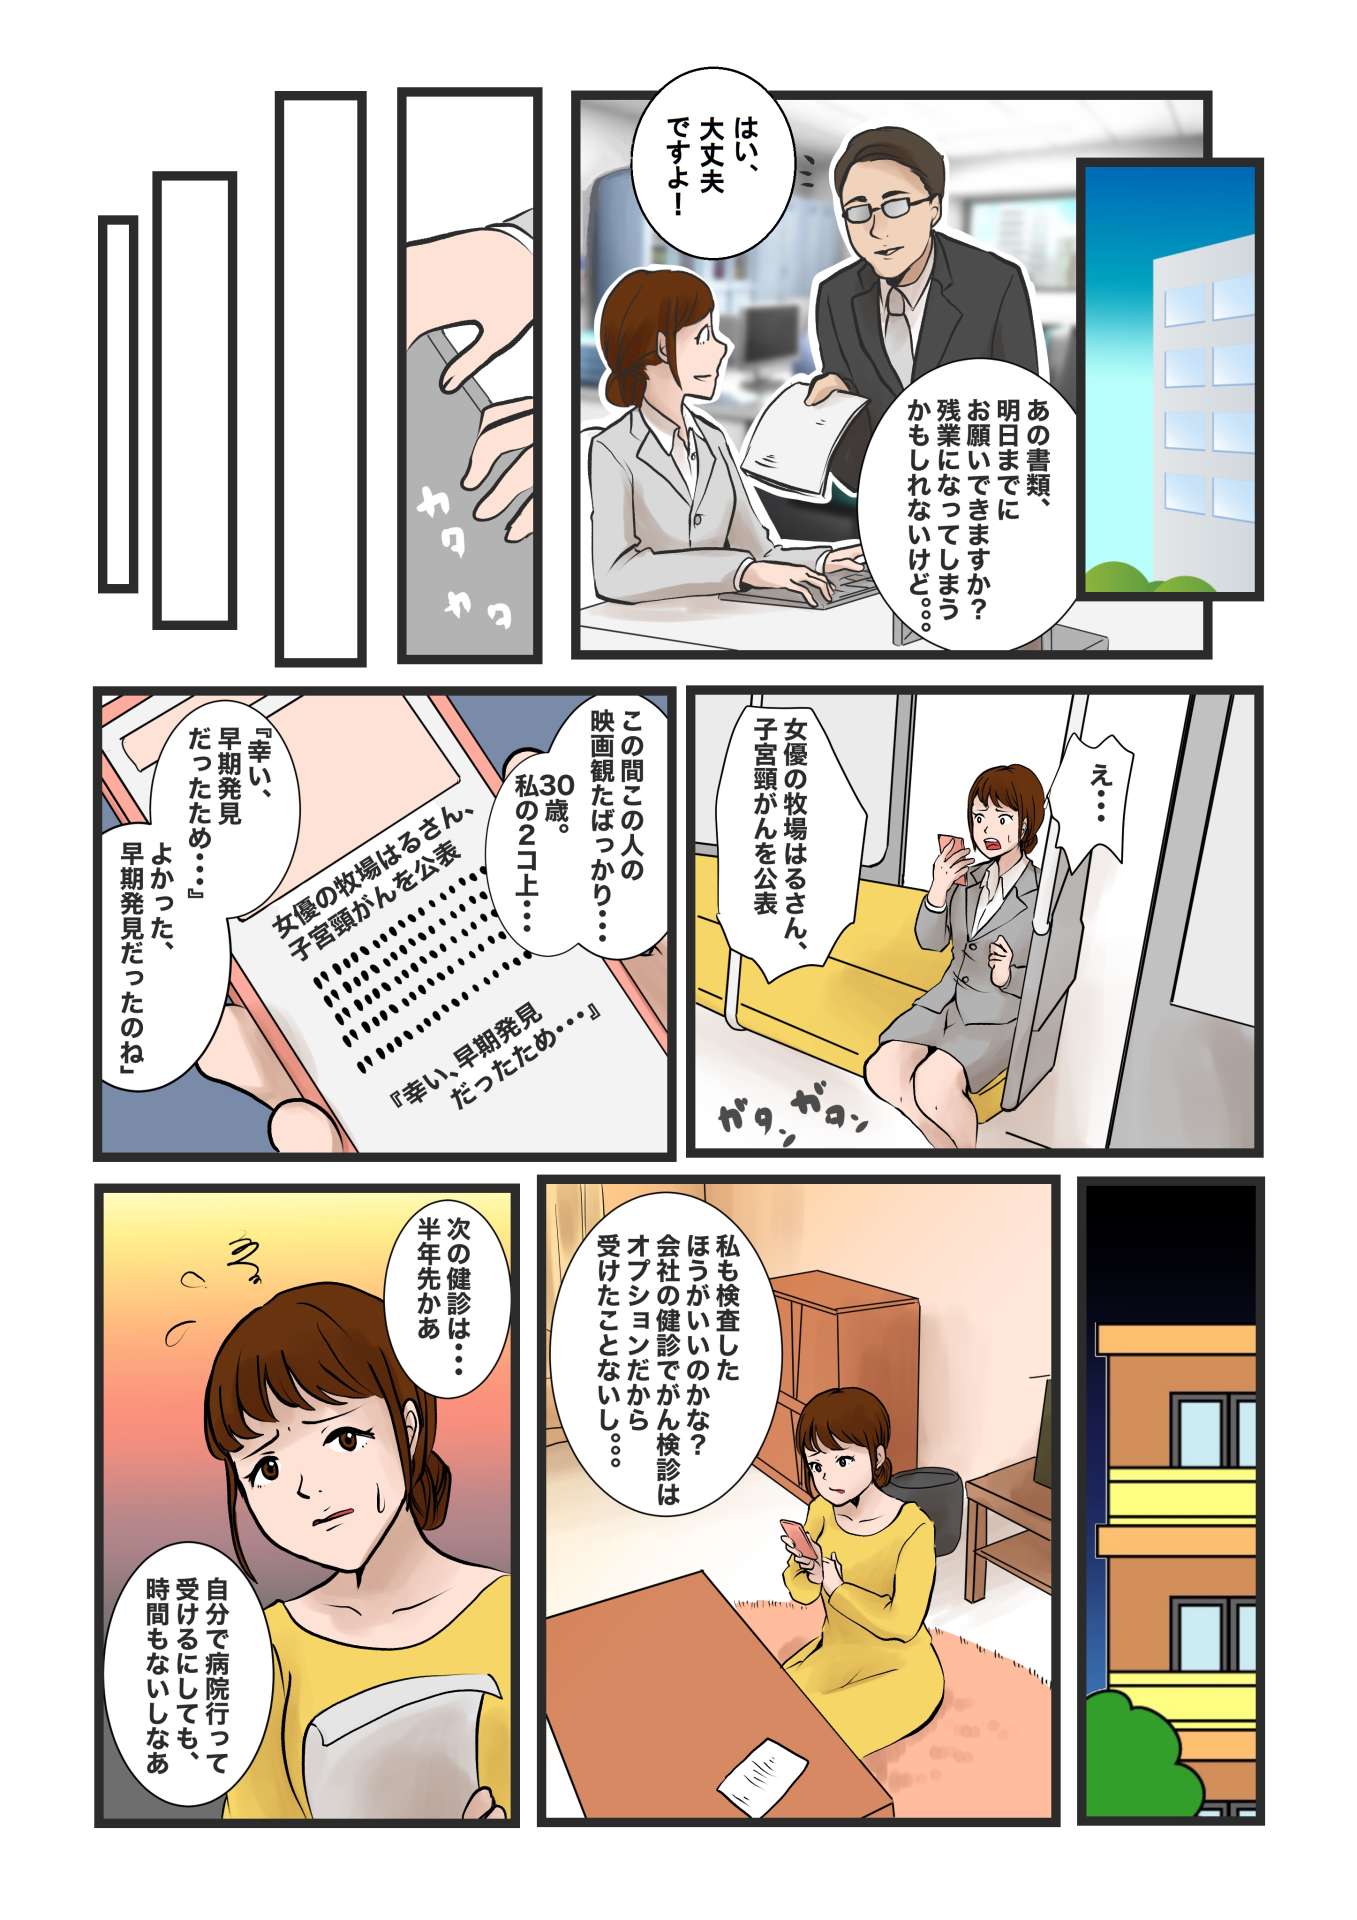 セルソフト検査キット紹介漫画完成 